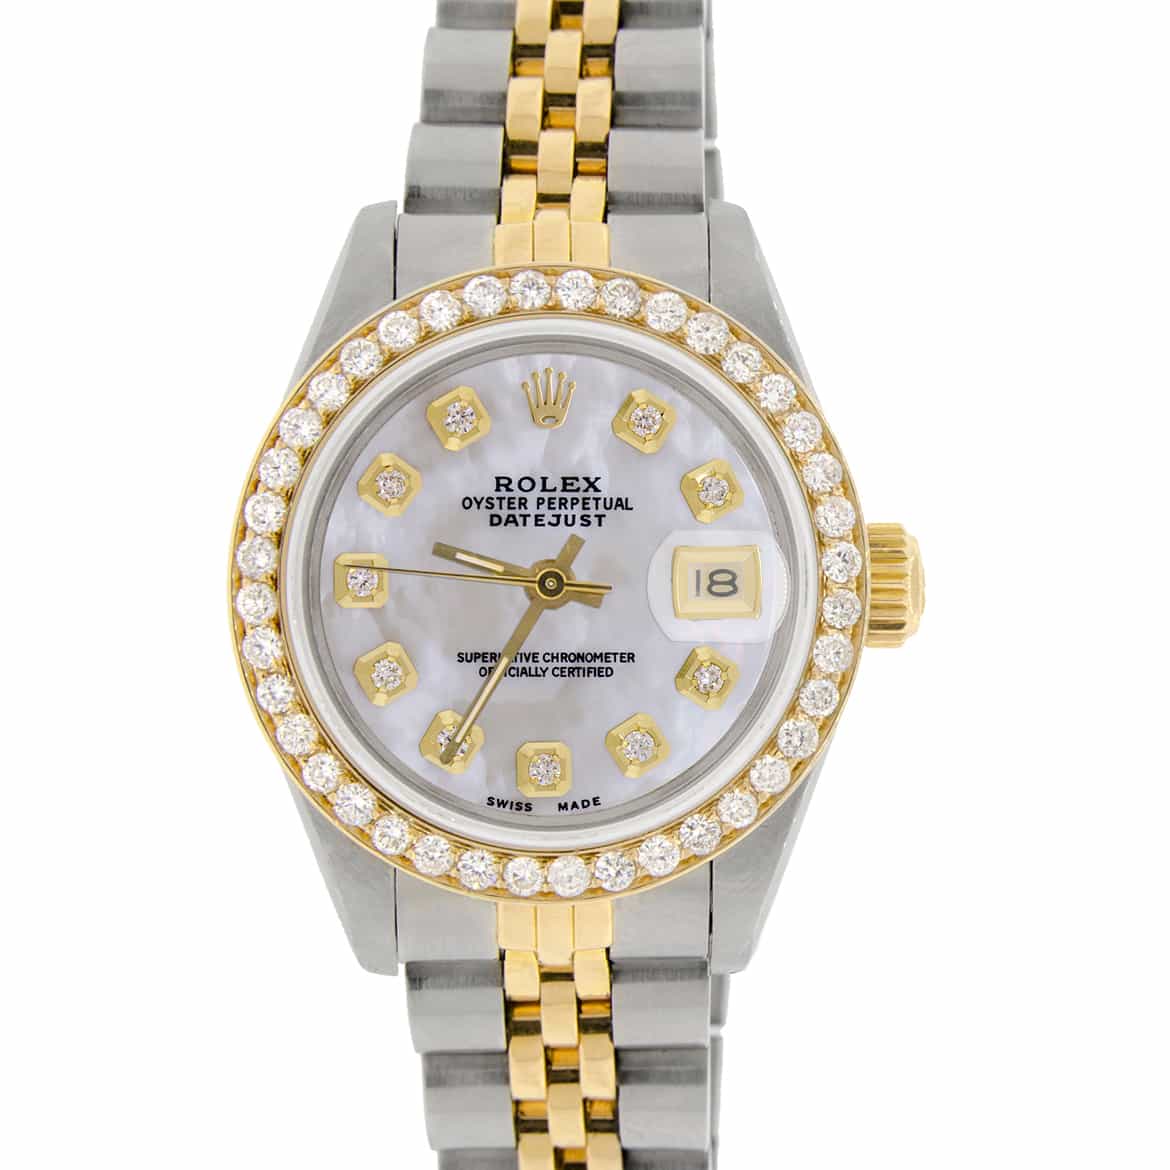 Rolex Datejust 18K Yellow Gold/Steel Ladies Watch